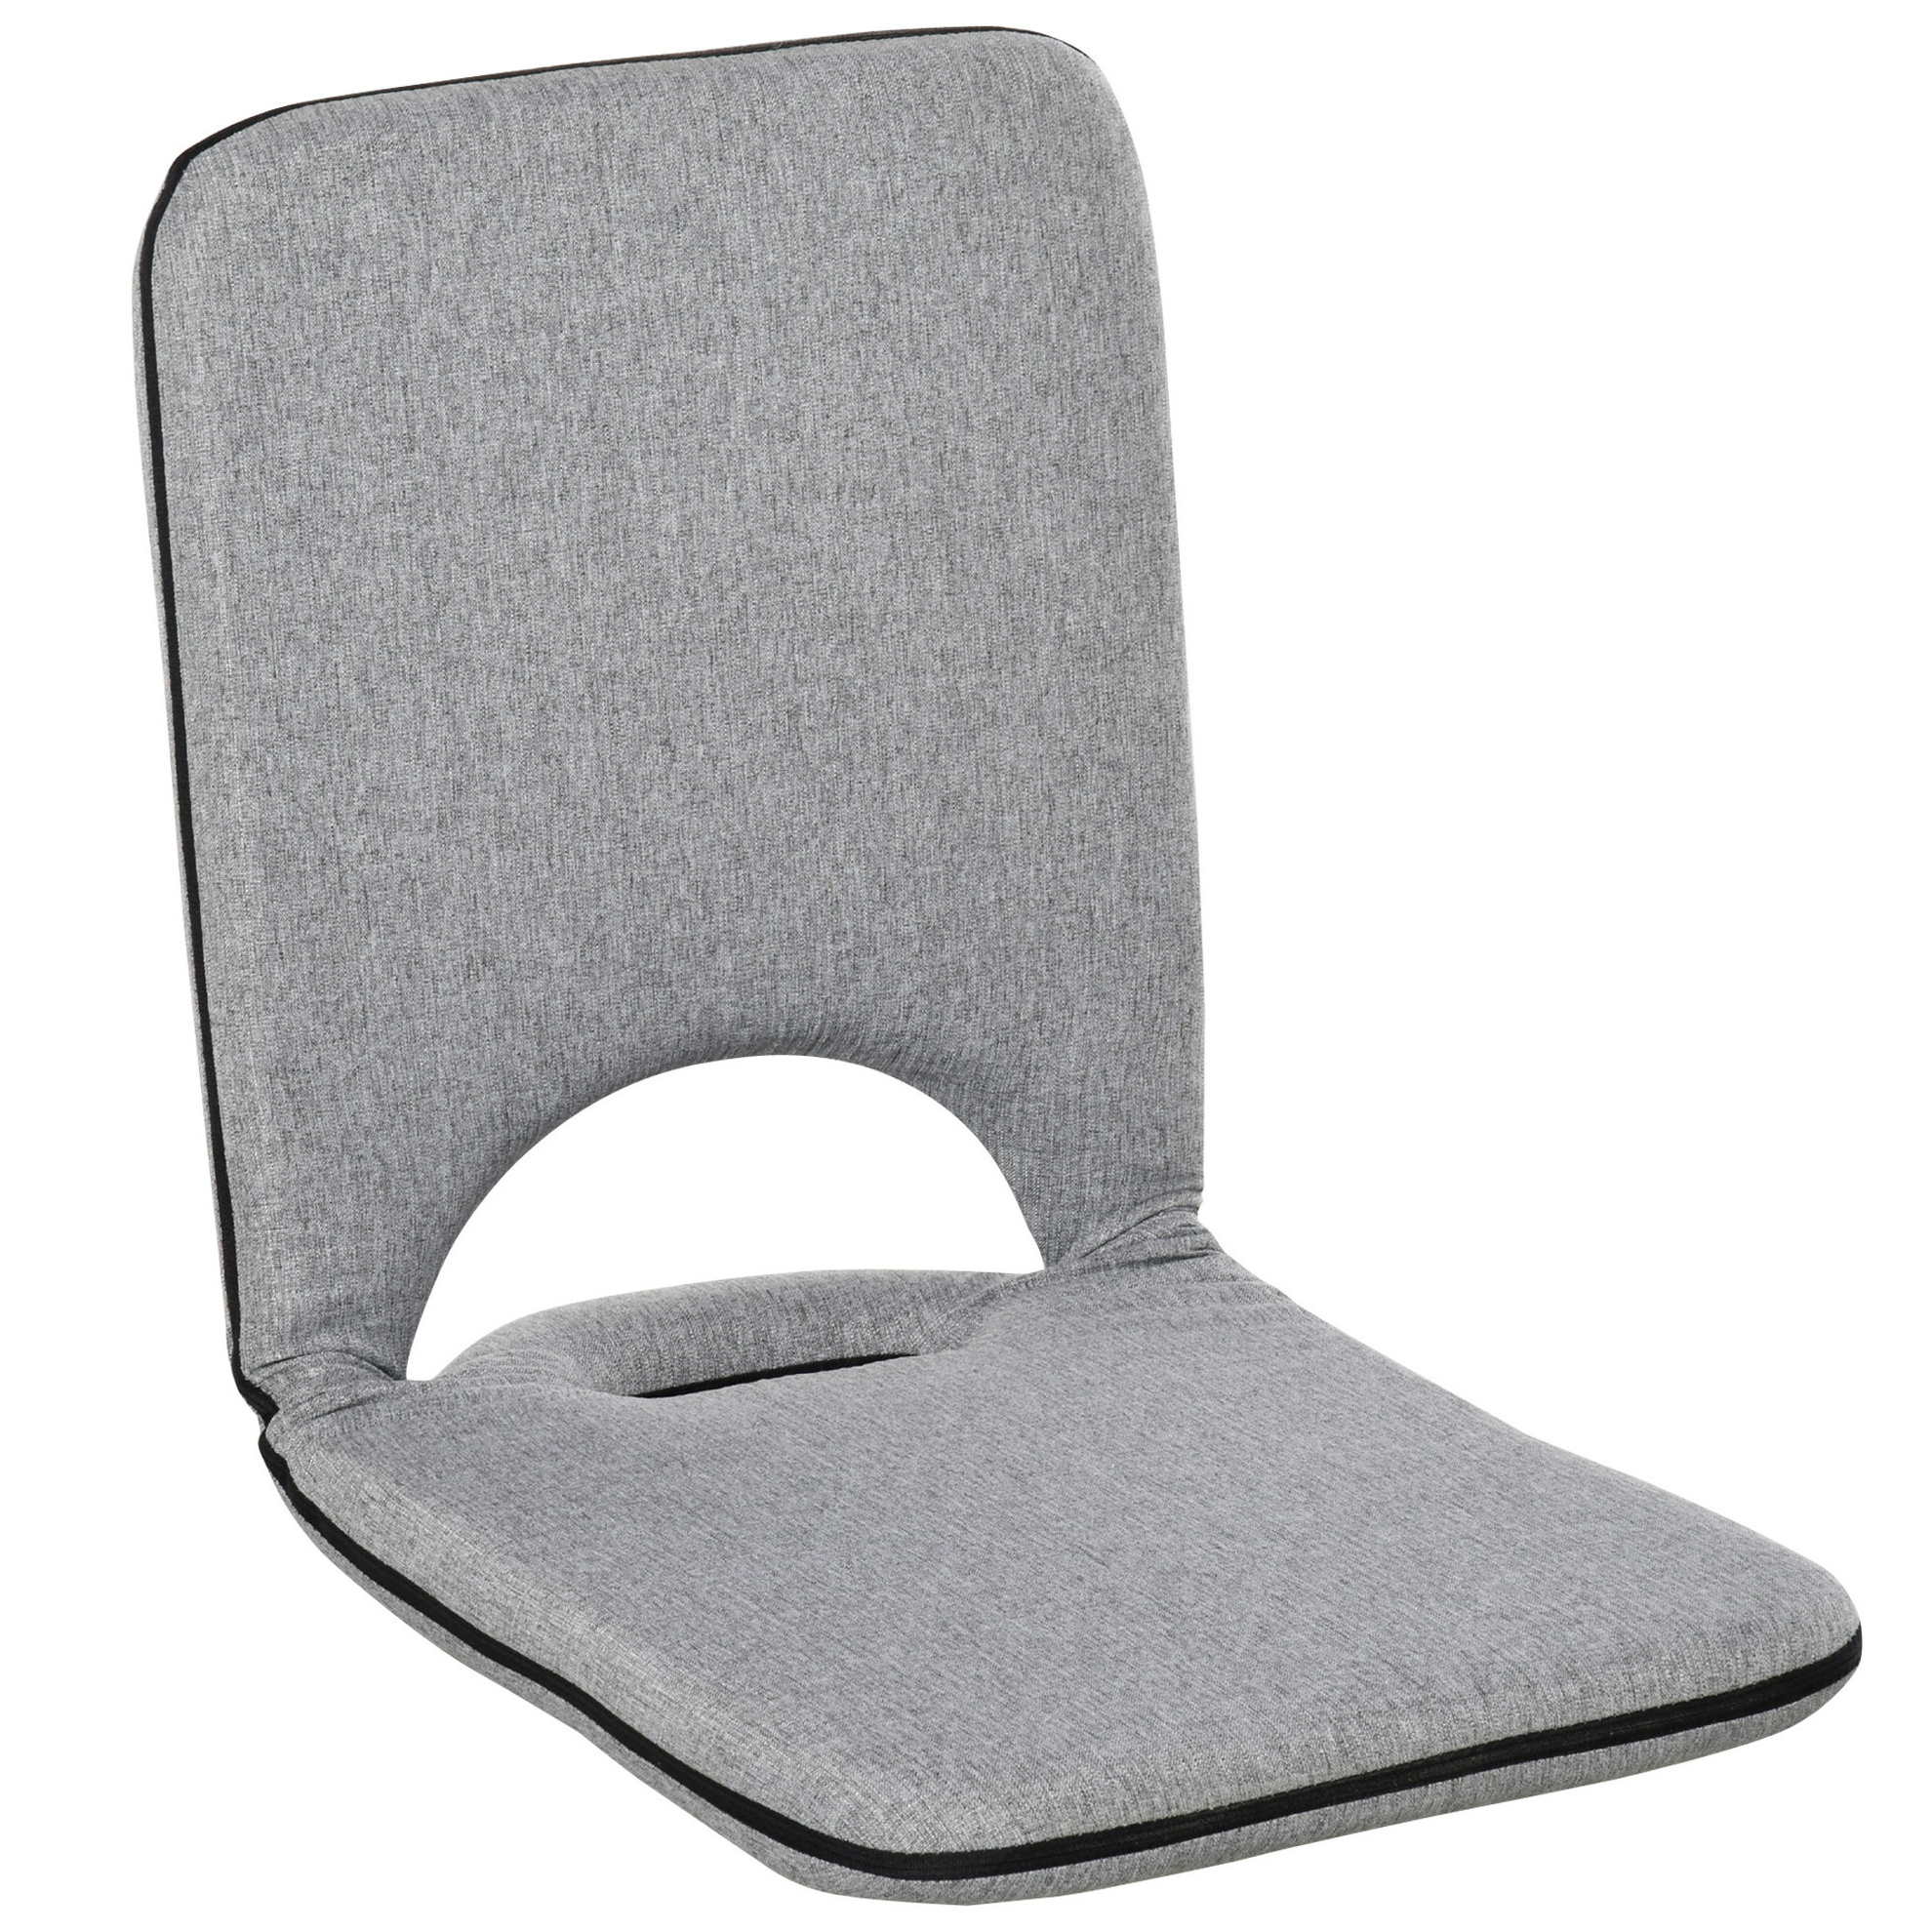 Sitzkissen mit verstellbarer Rückenlehne bestellen | Weltbild.de